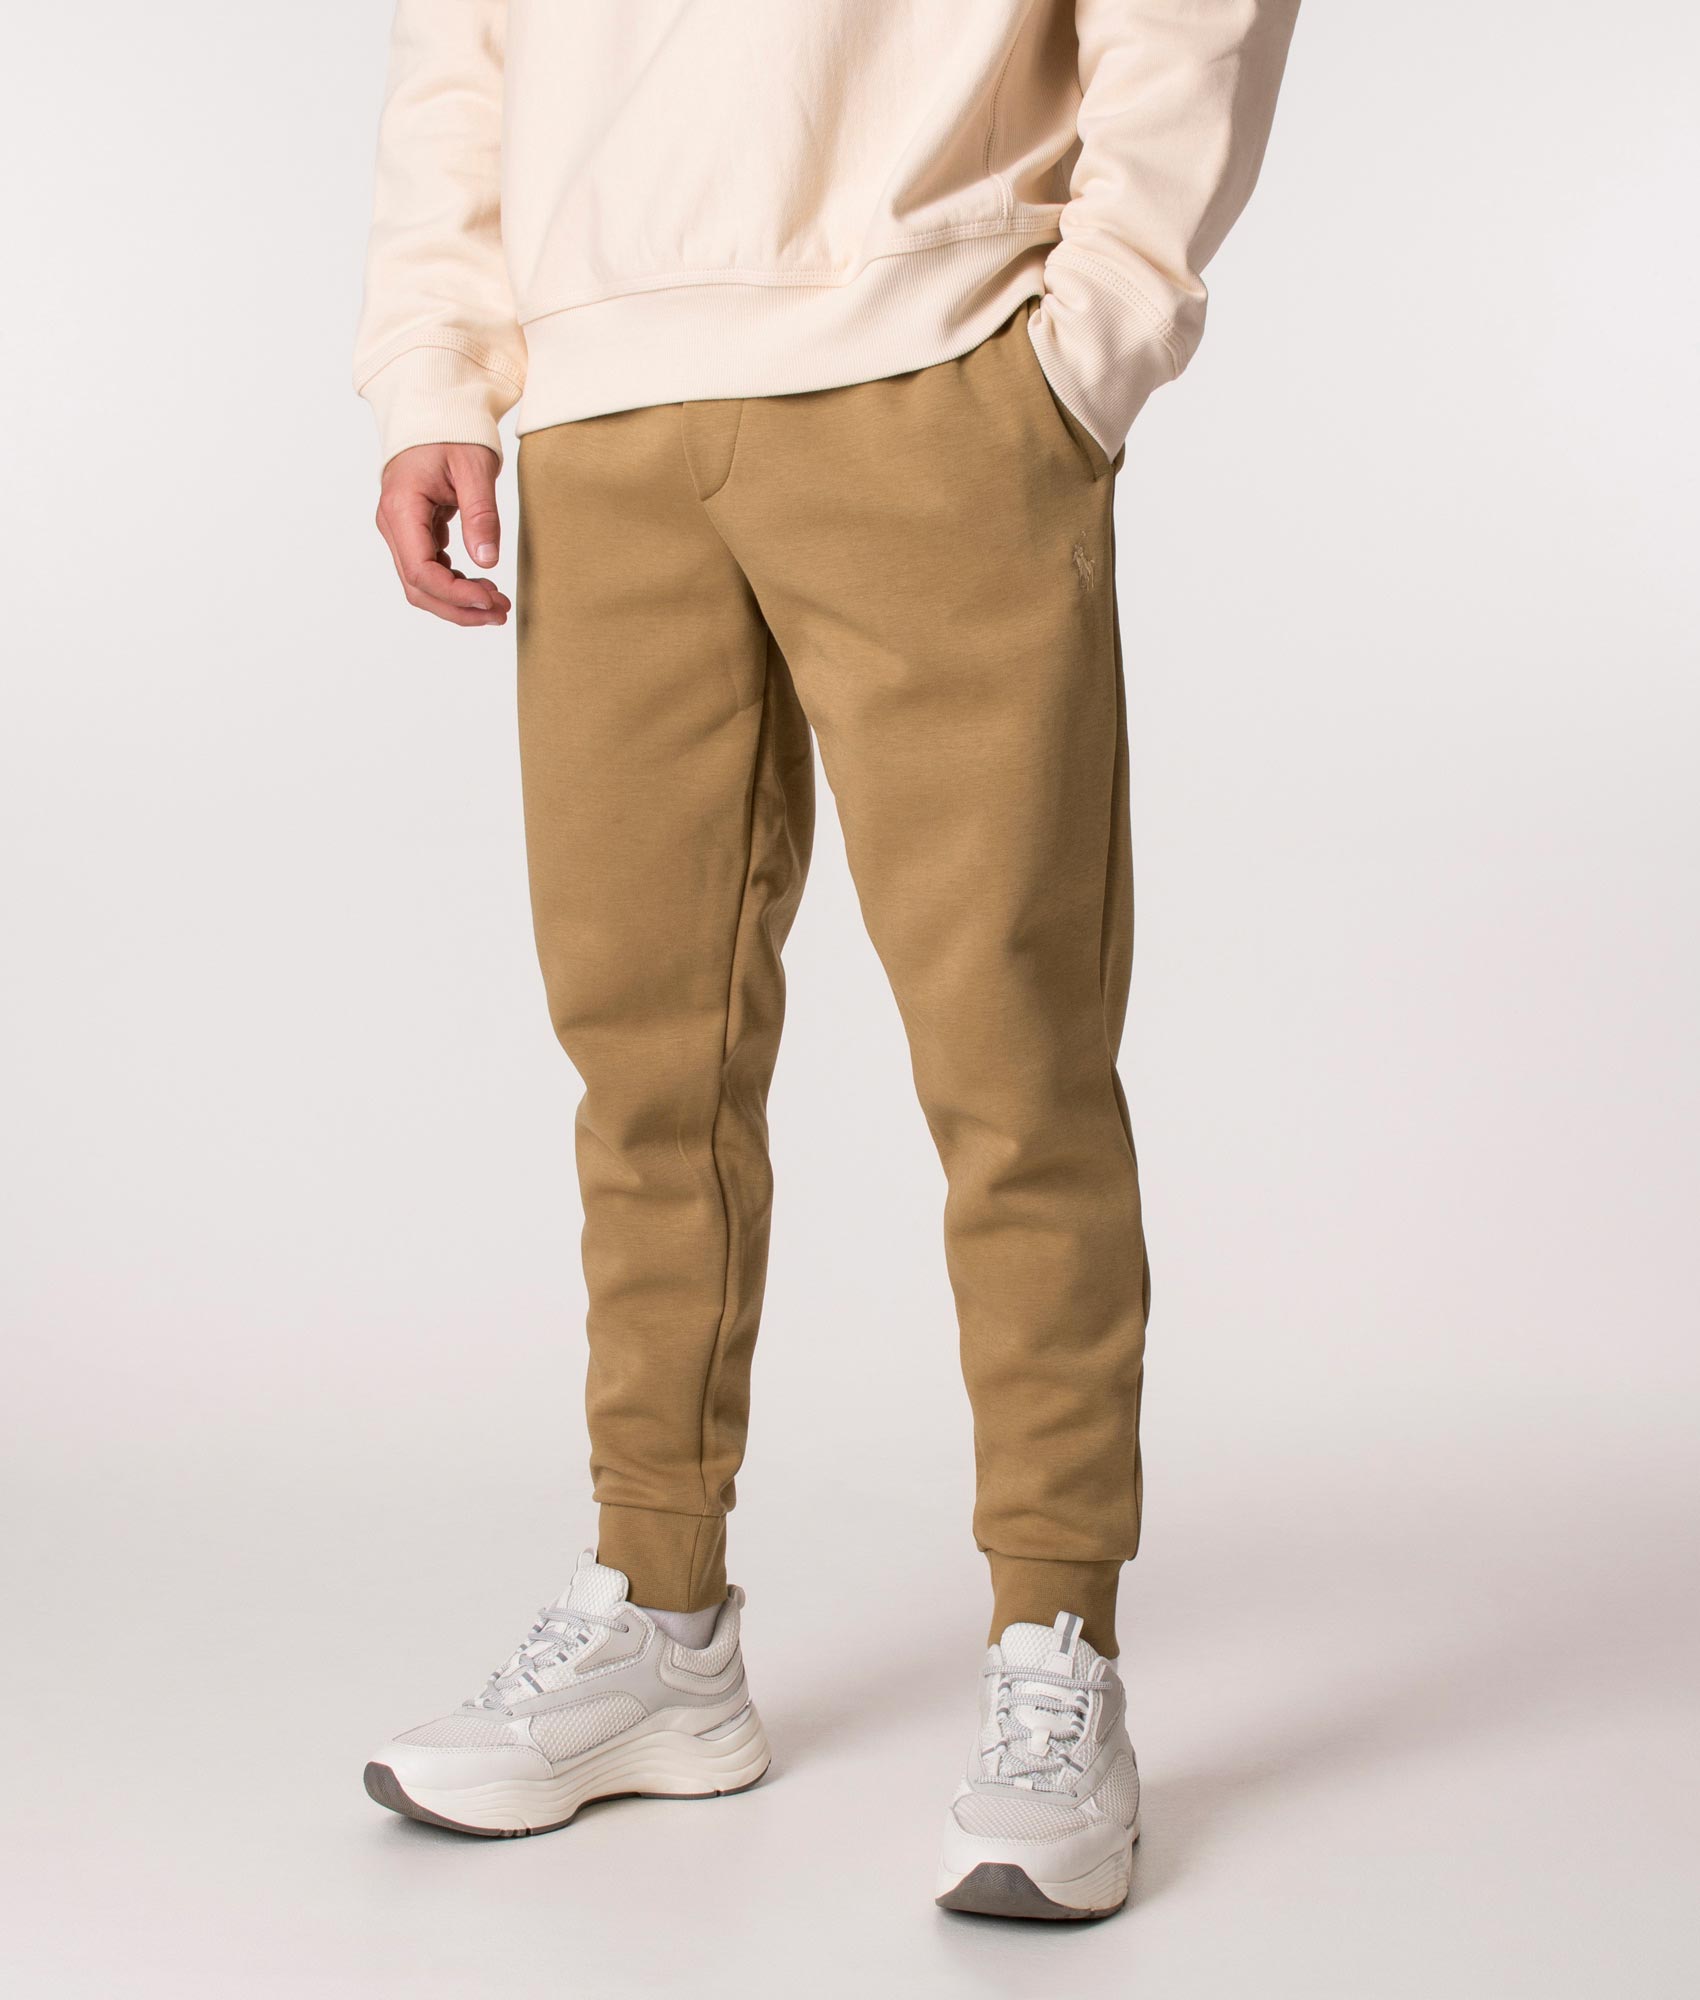 Polo Ralph Lauren Mens Athletic Jogger Pant - Colour: 002 Khaki - Size: XL